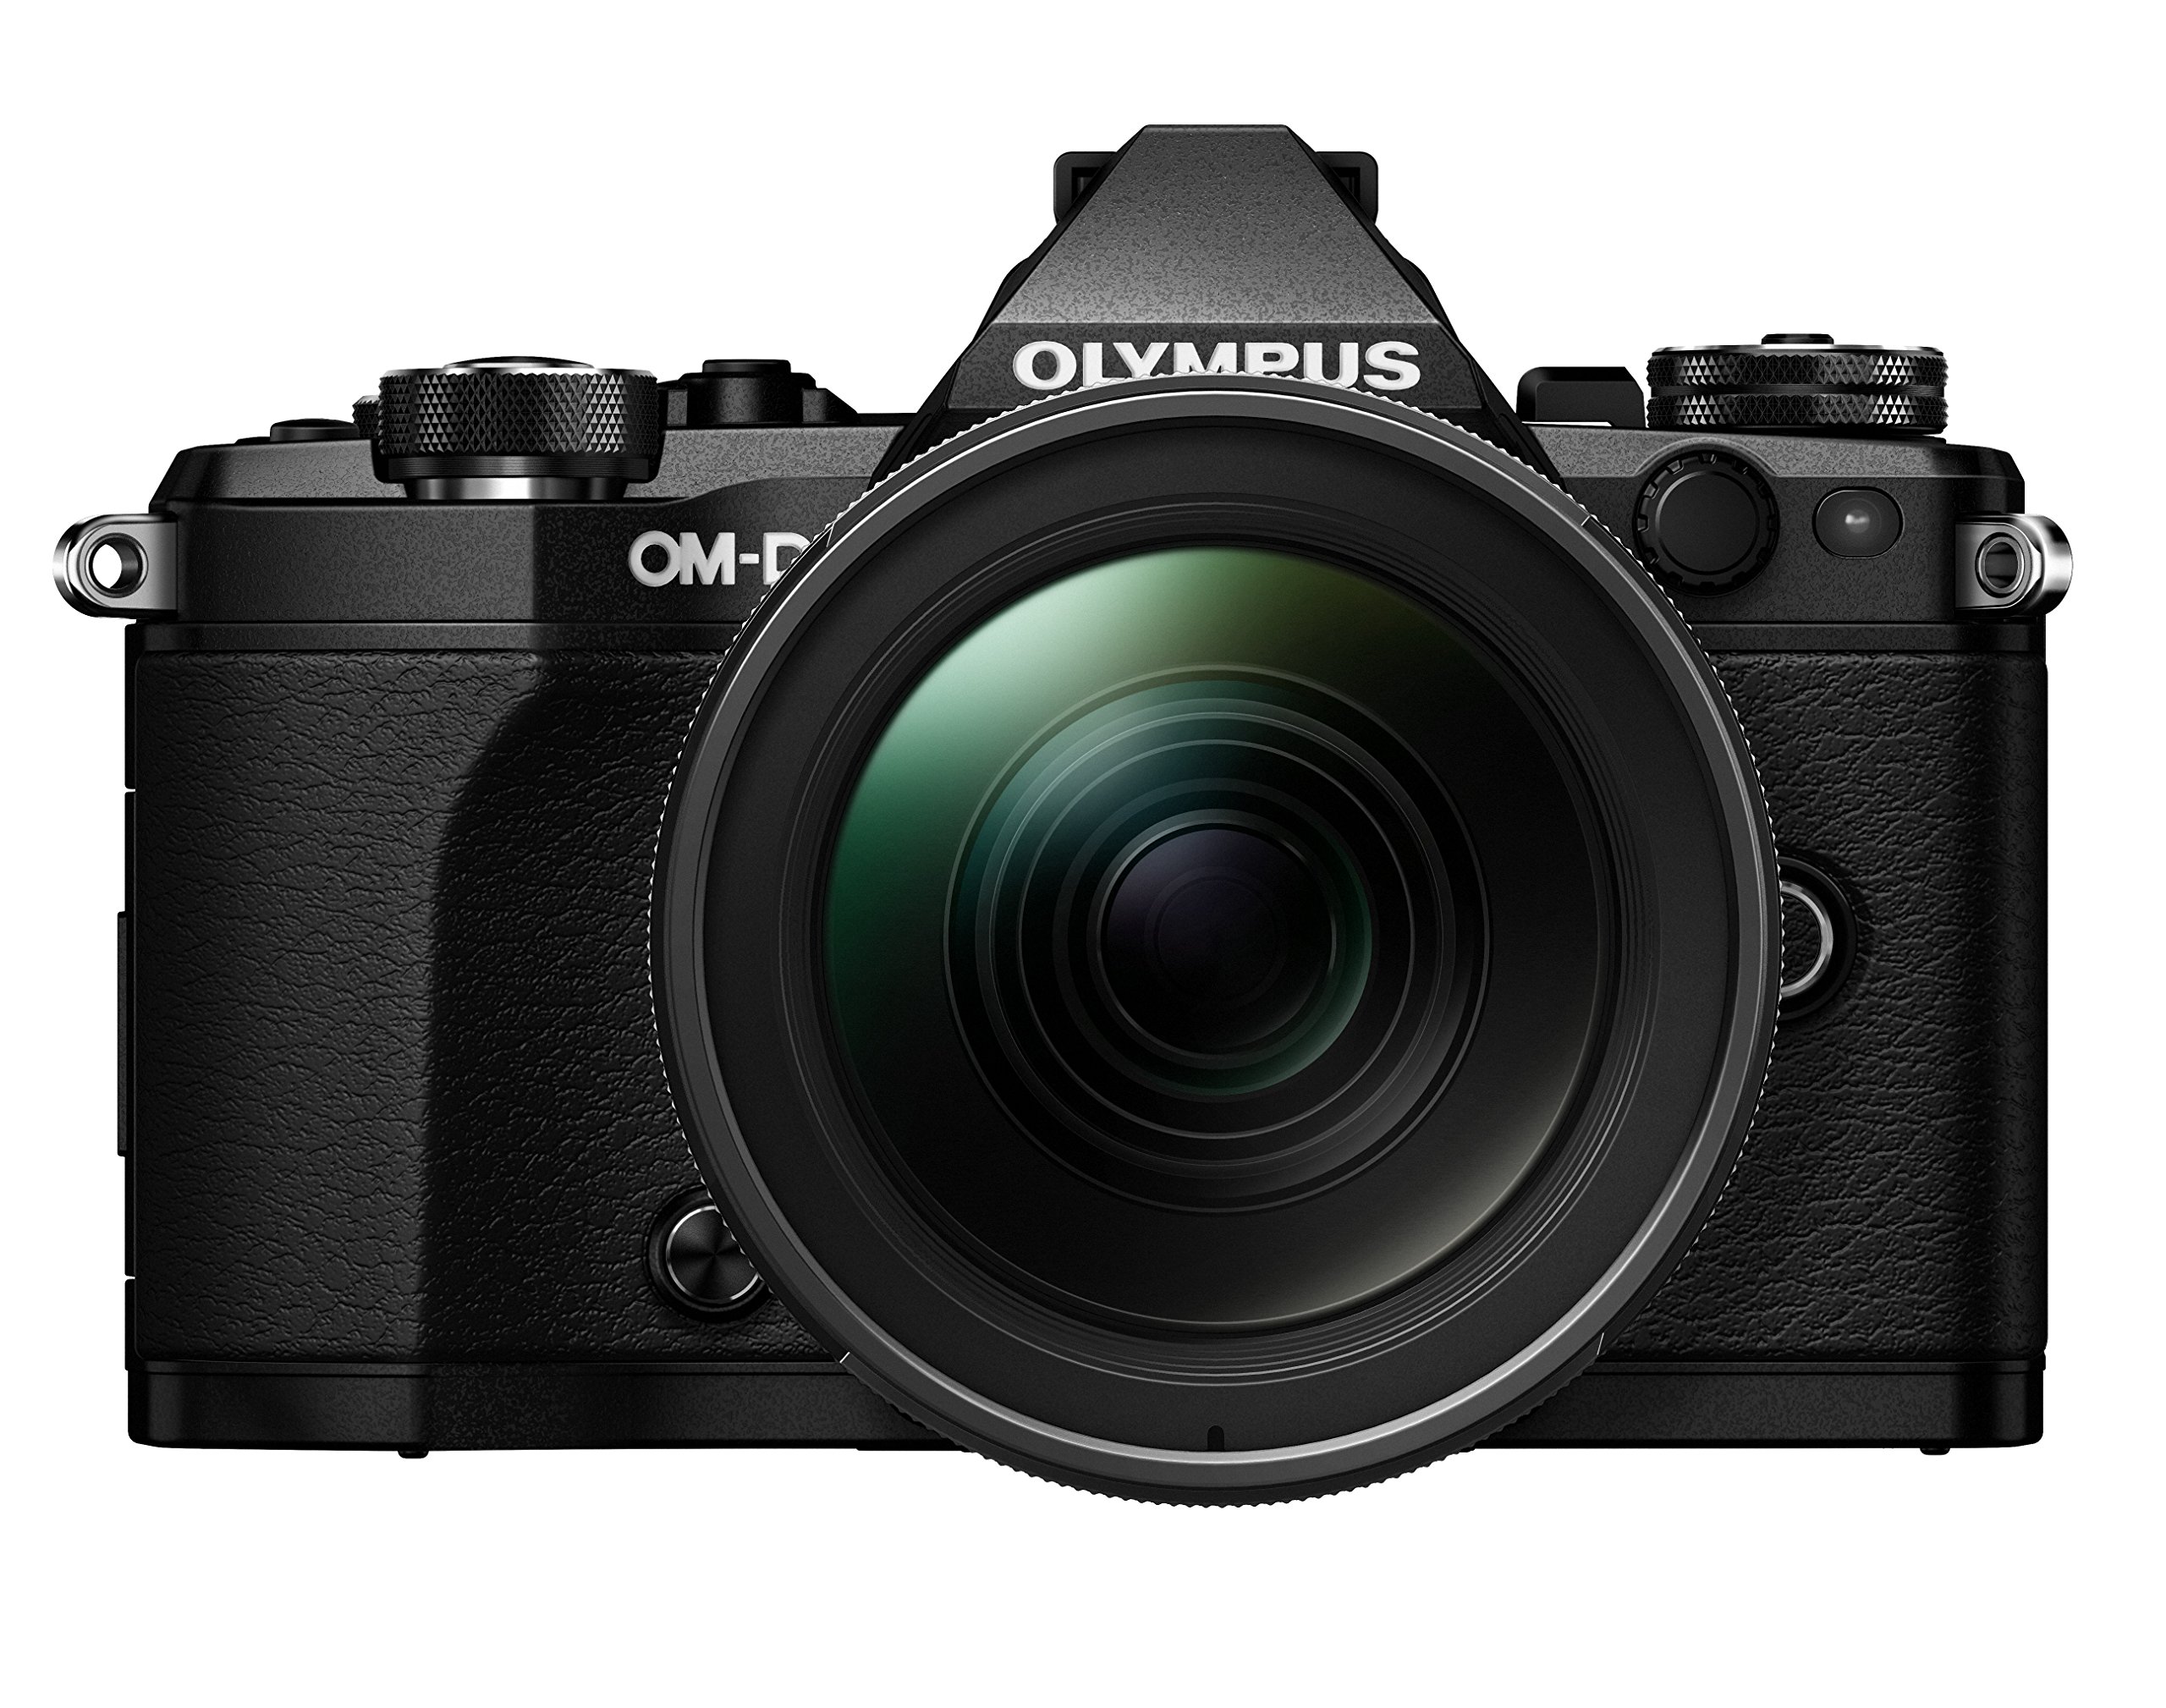 Olympus OM-D E-M5 Mark II Kit, Micro Four Thirds Systemkamera (16.1 Megapixel, 5-Achsen Bildstabilisator, elektronischer Sucher) + M.Zuiko 12-40mm PRO Universalzoom, schwarz